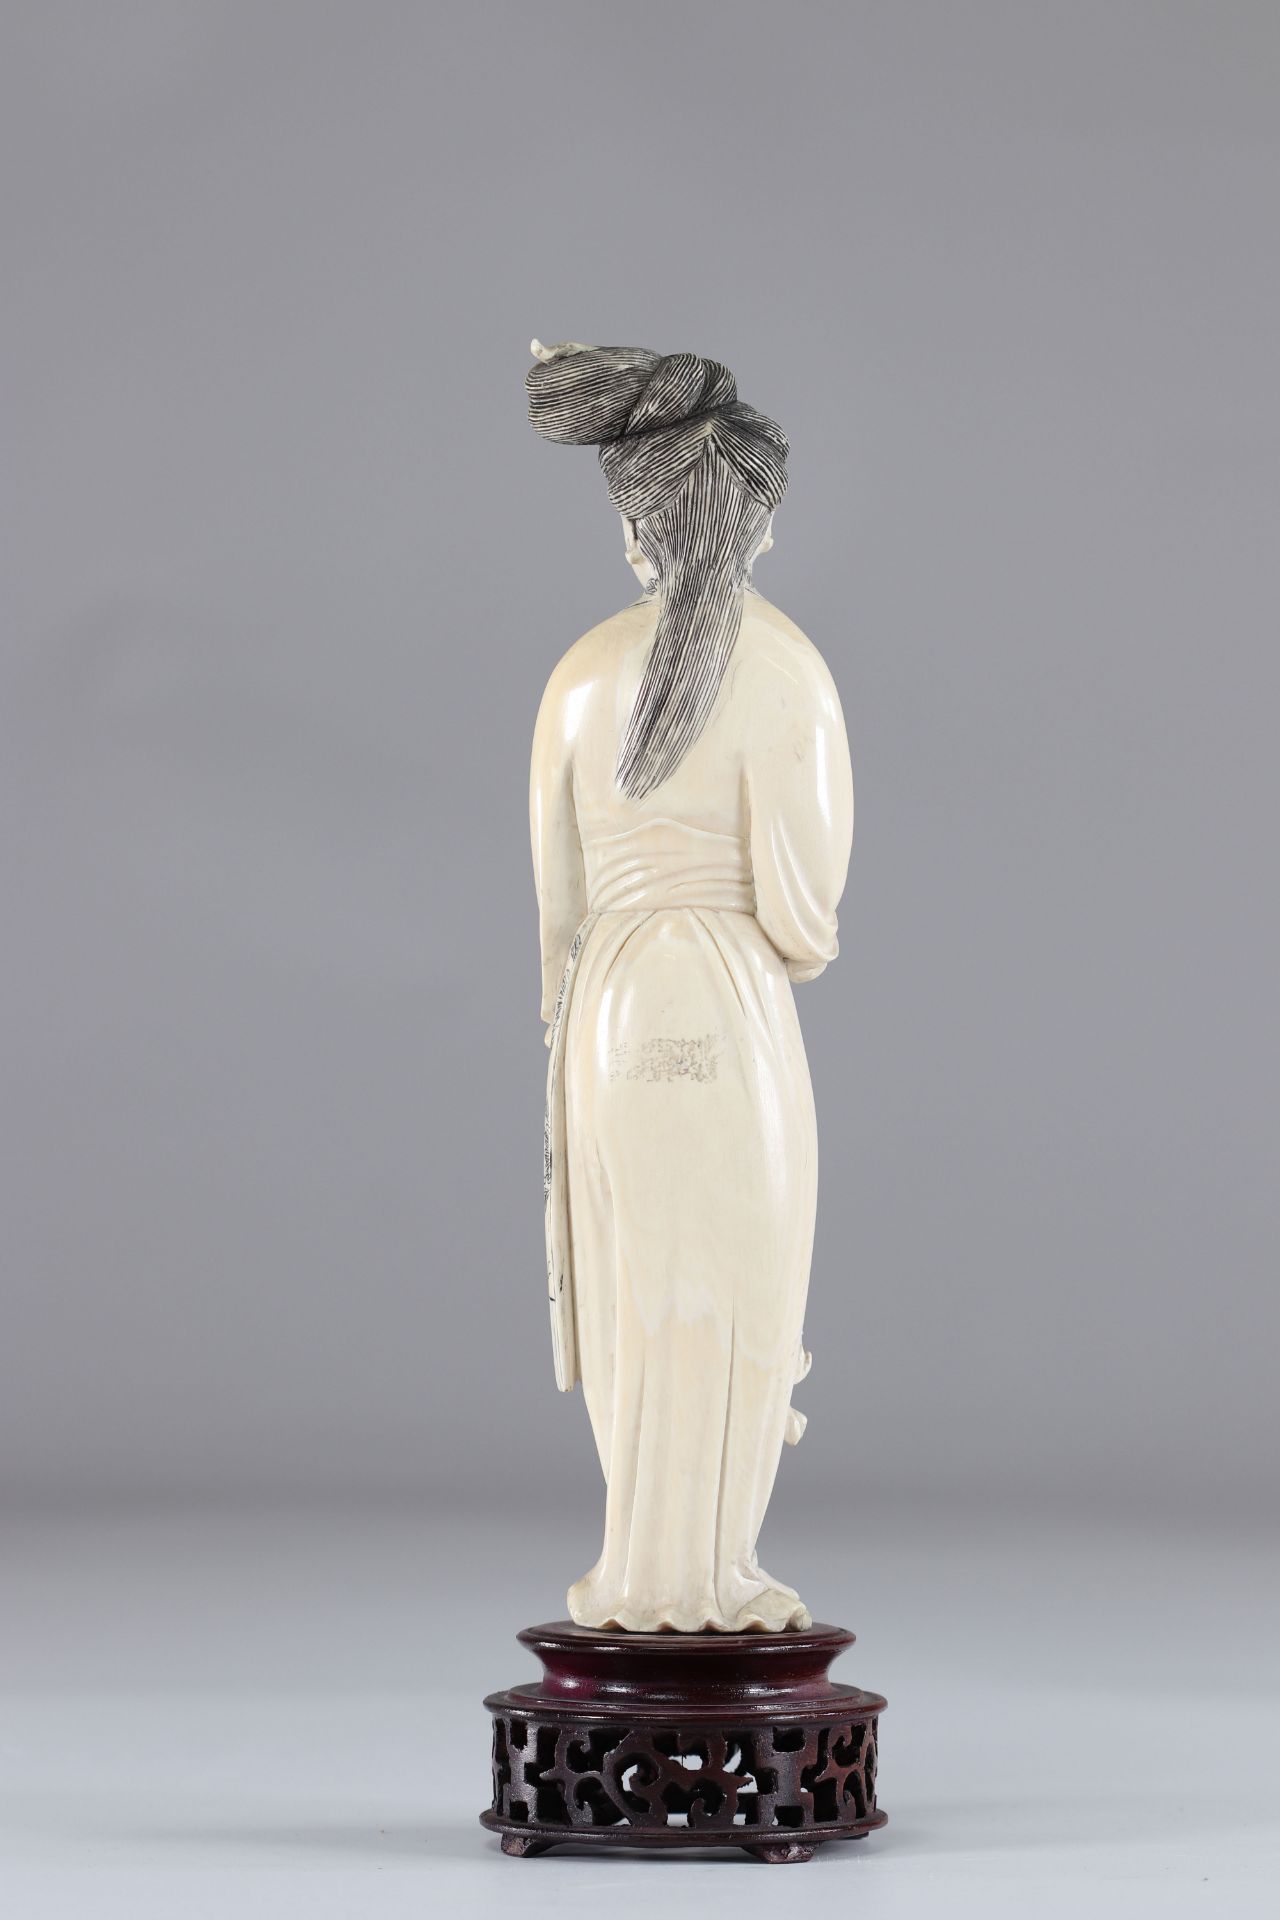 Ivory geisha - Image 2 of 2